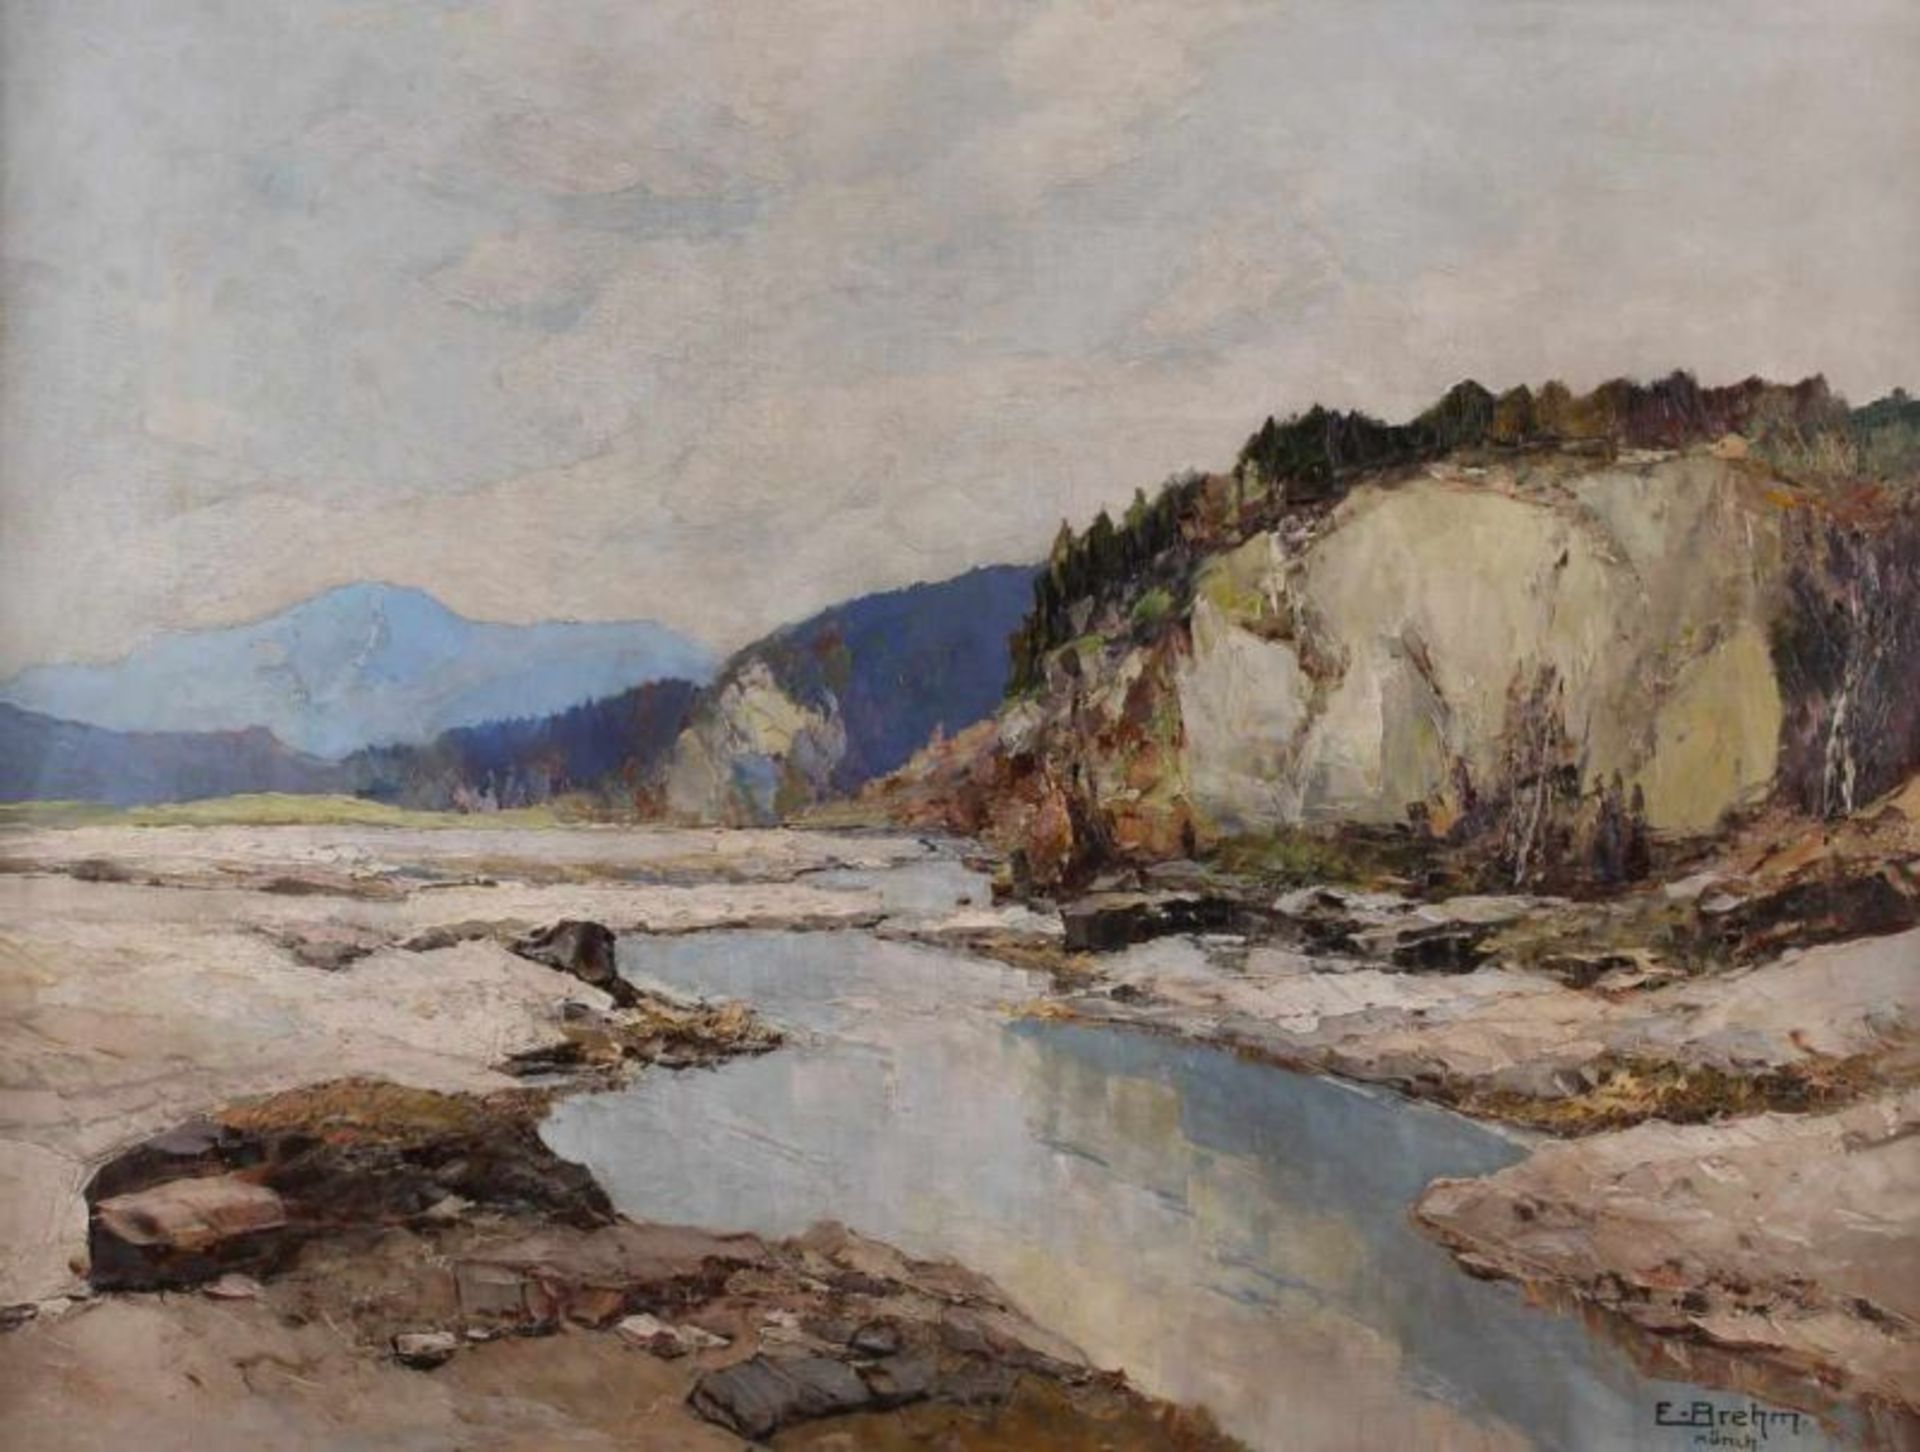 Brehm, Emil (geb. um 1930, in München tätiger Landschaftsmaler), "Altwasser im Isartal", Öl auf